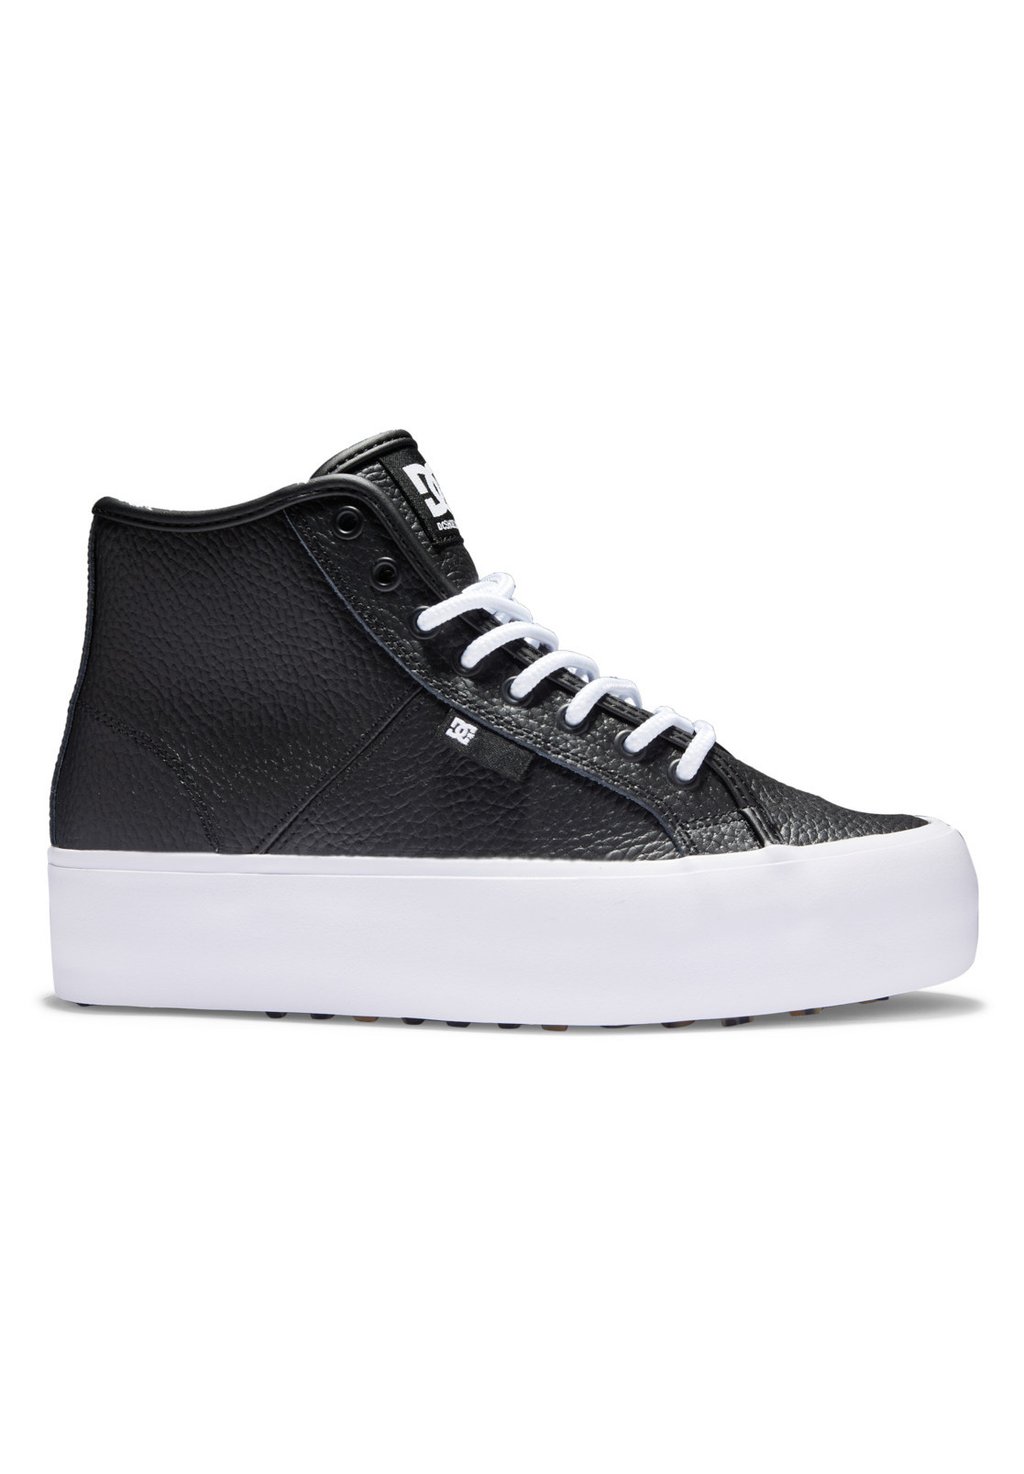 Высокие кроссовки DC Shoes MANUAL, цвет black white кроссовки dc dc manual sneaker цвет black grey white